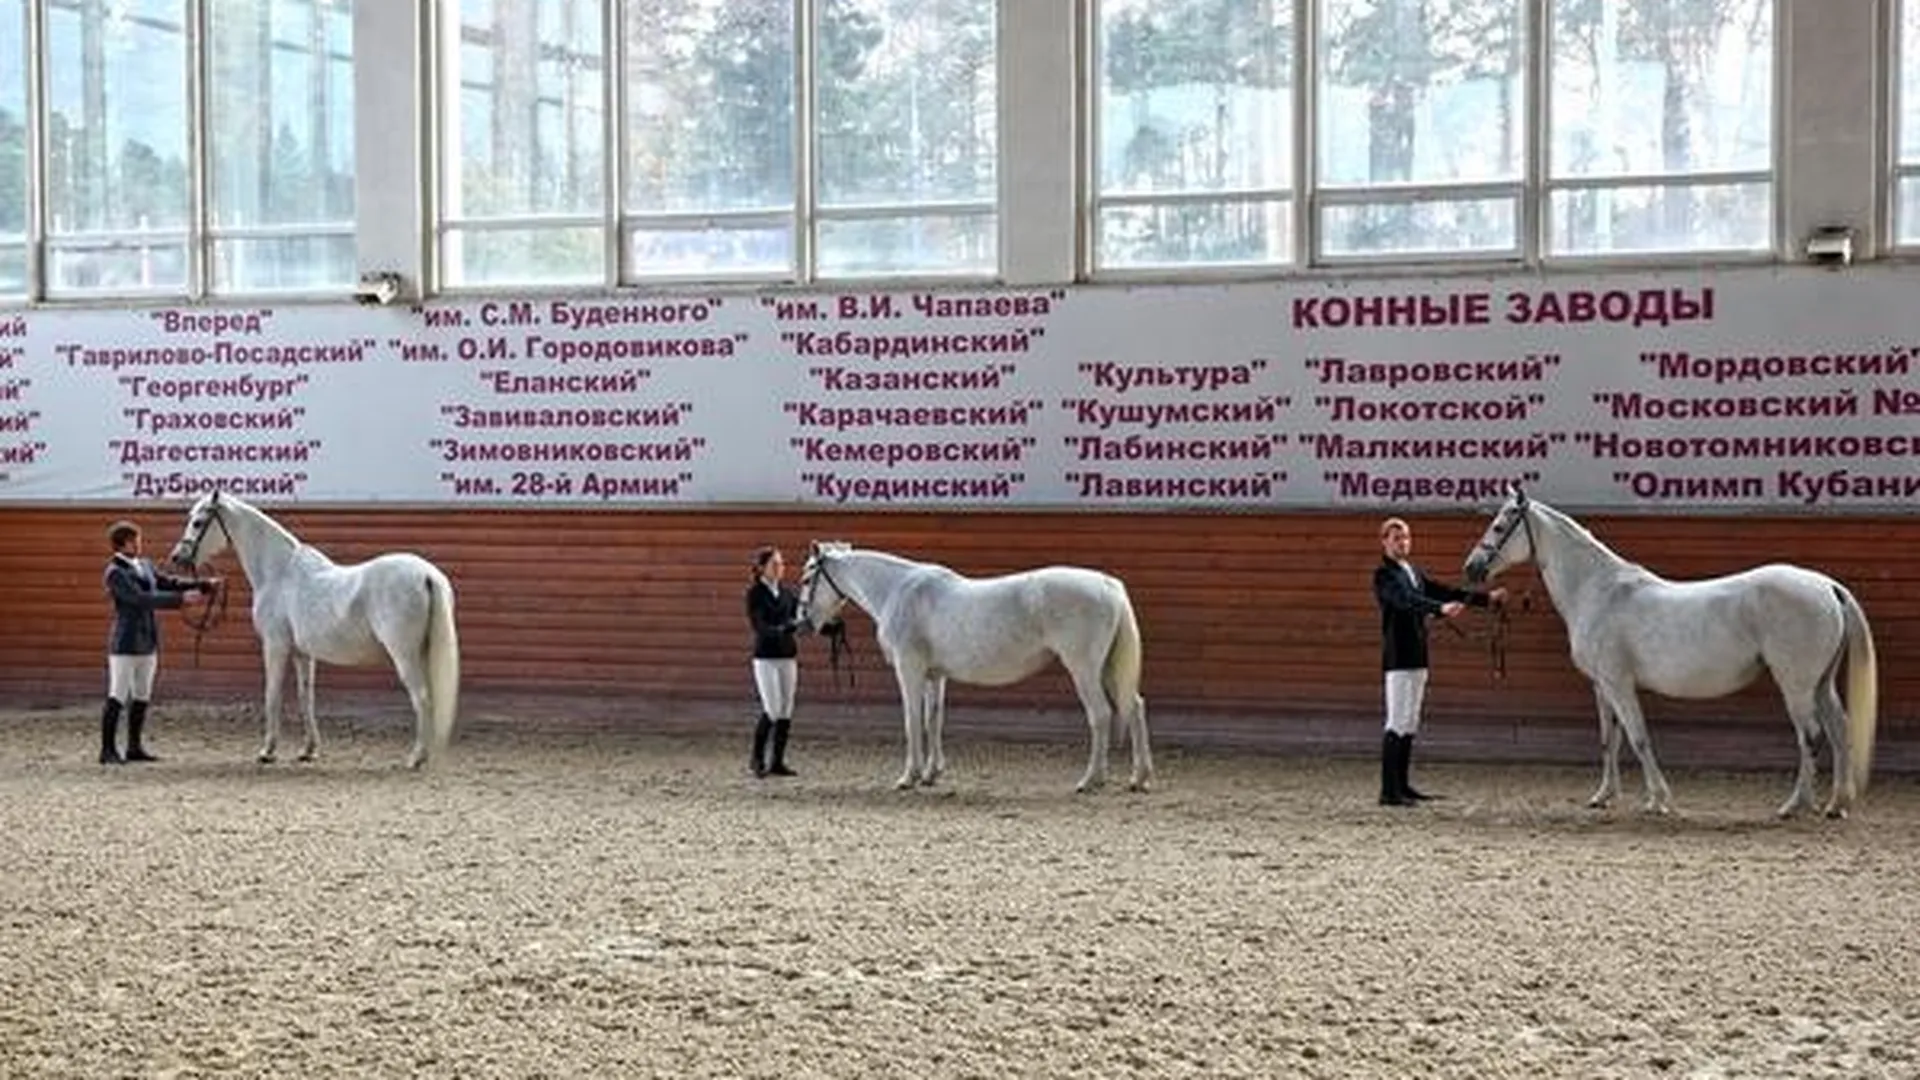 Московский конный завод №1 отметил 90-летие